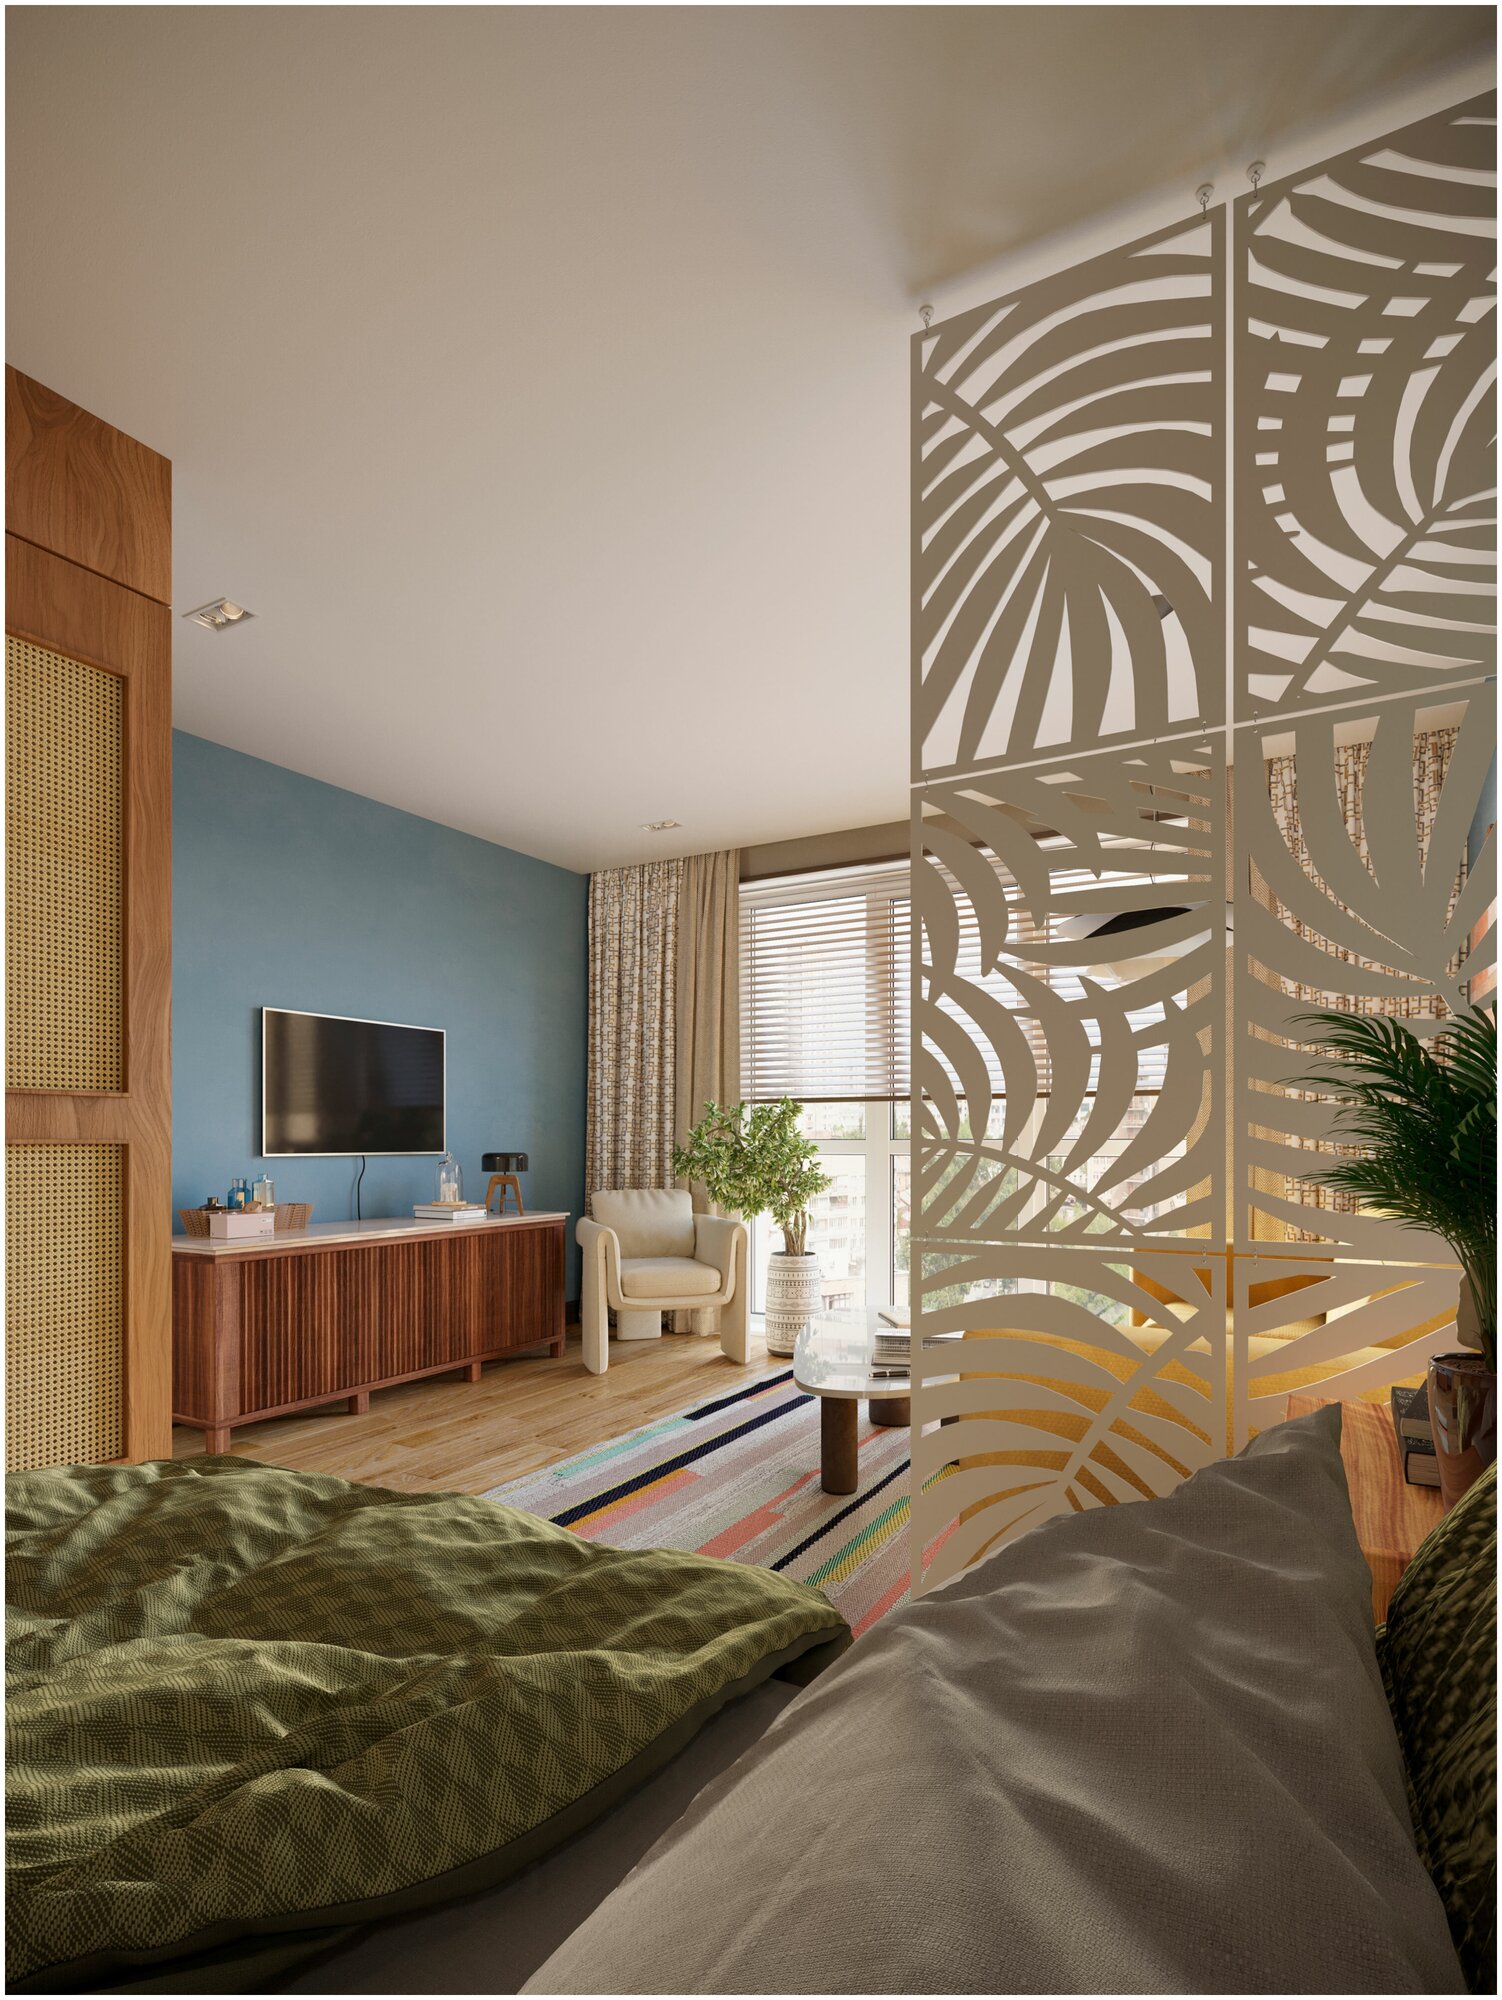 Ширма перегородка для комнаты дома интерьерная декоративная модульная для зонирования пространства - фотография № 5